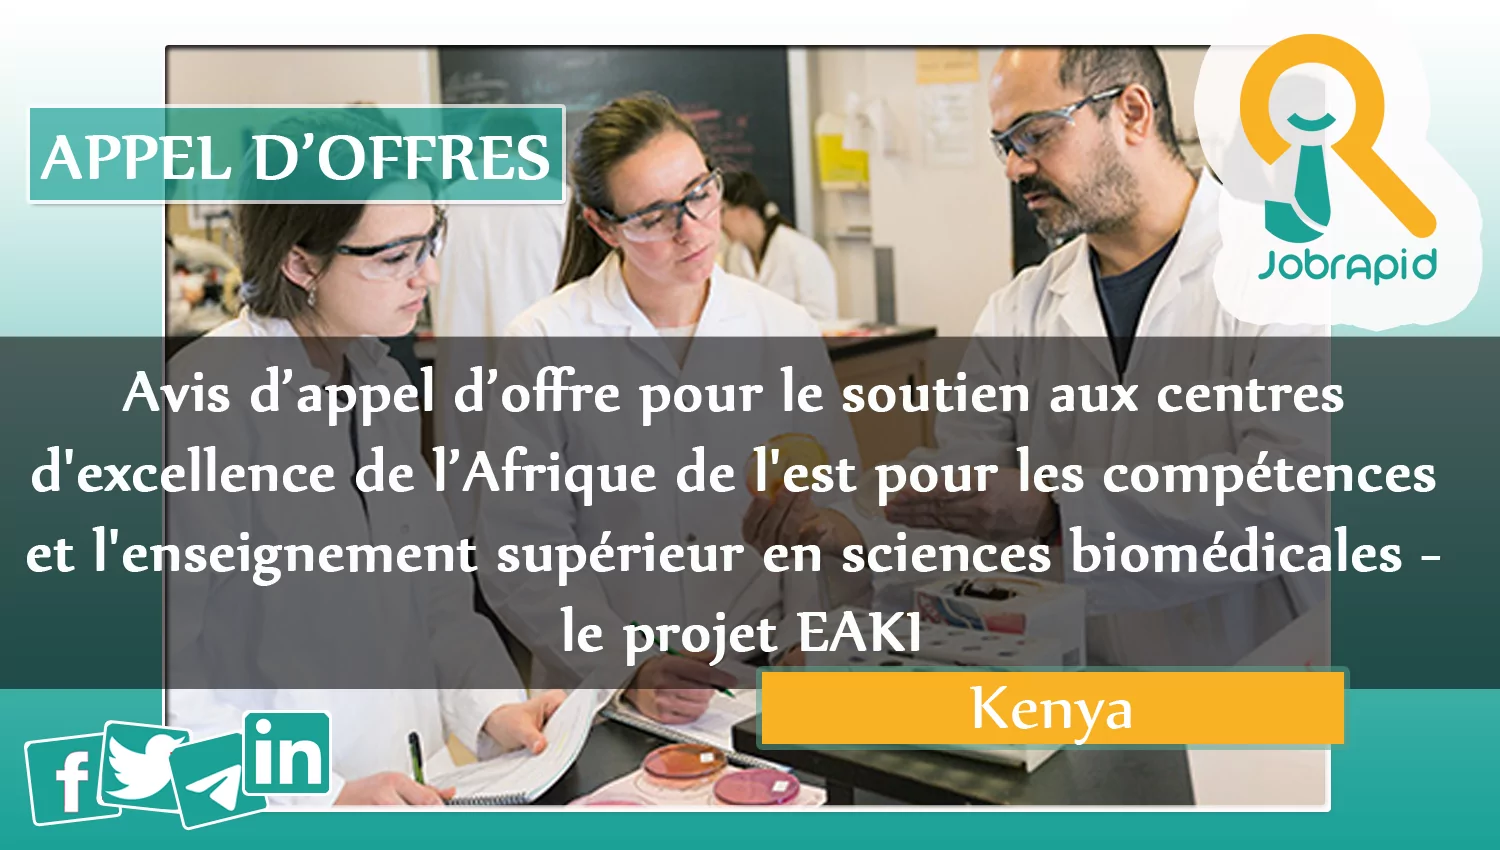 Avis d’appel d’offre pour le soutien aux centres d’excellence de l’Afrique de l’est pour les compétences et l’enseignement supérieur en sciences biomédicales – le projet EAKI, Kenya